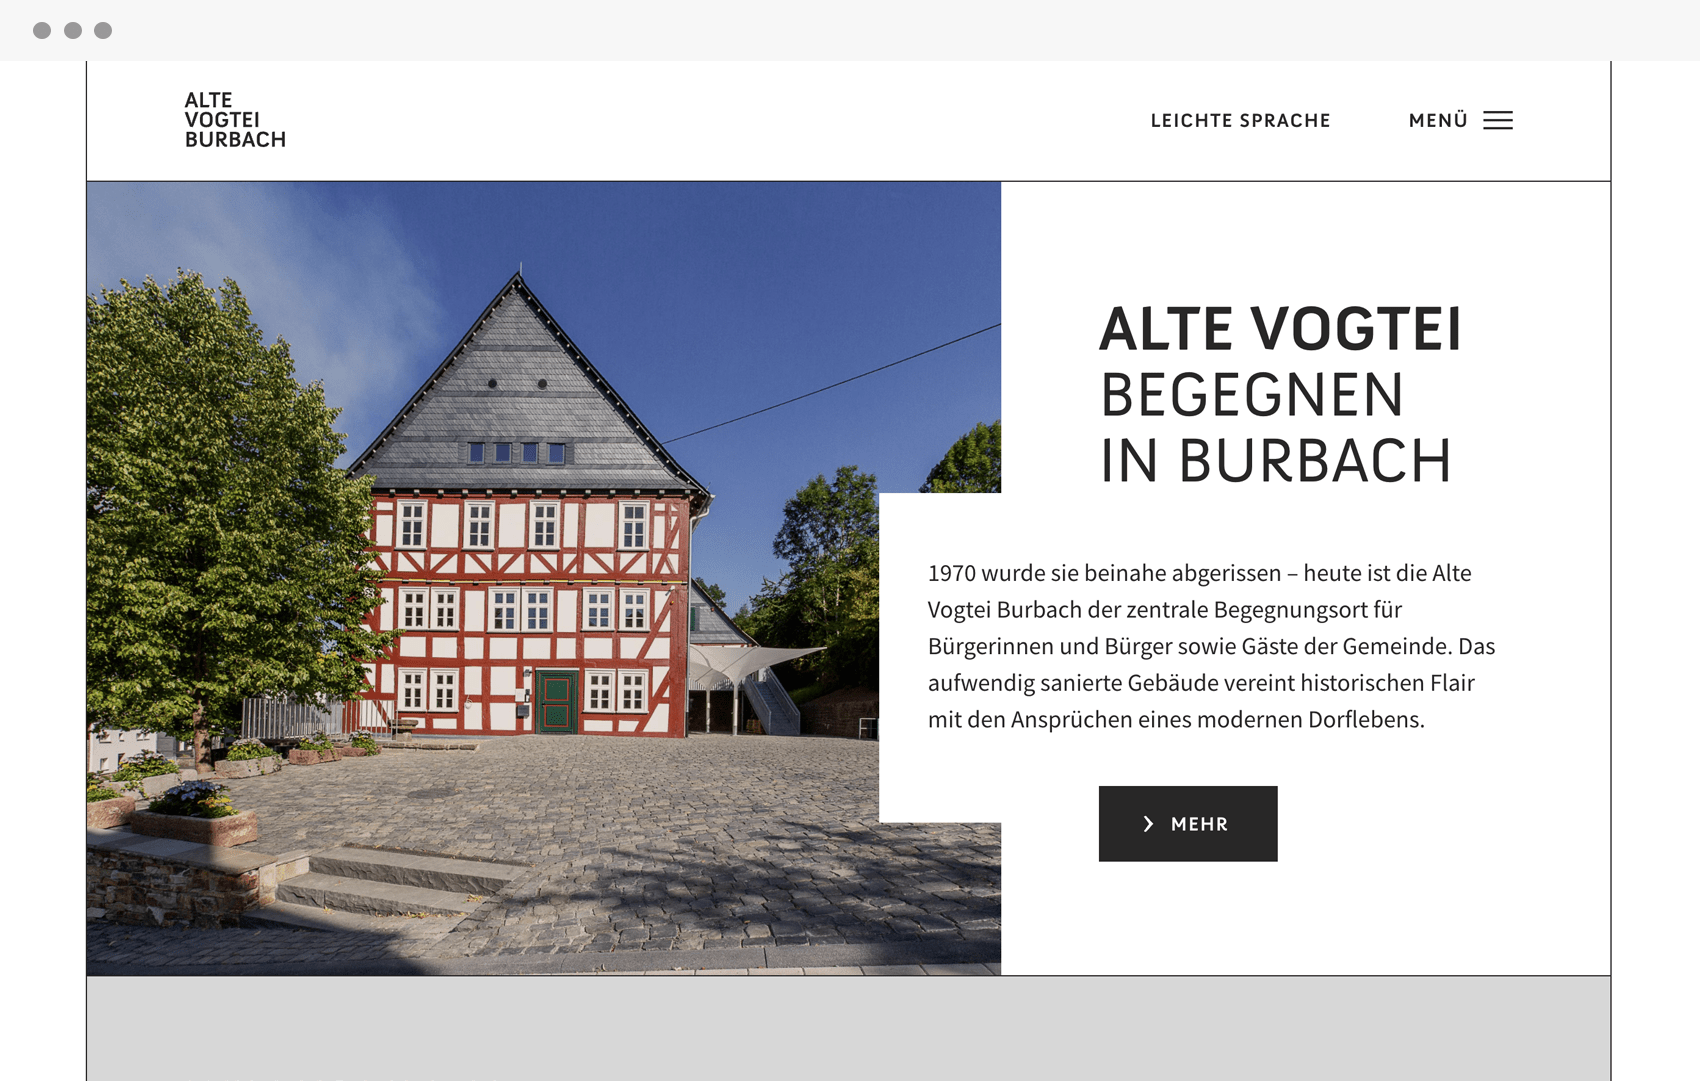 Vorschau der WordPress Website der Alte Vogtei Burbach für BOK+ Gärtner